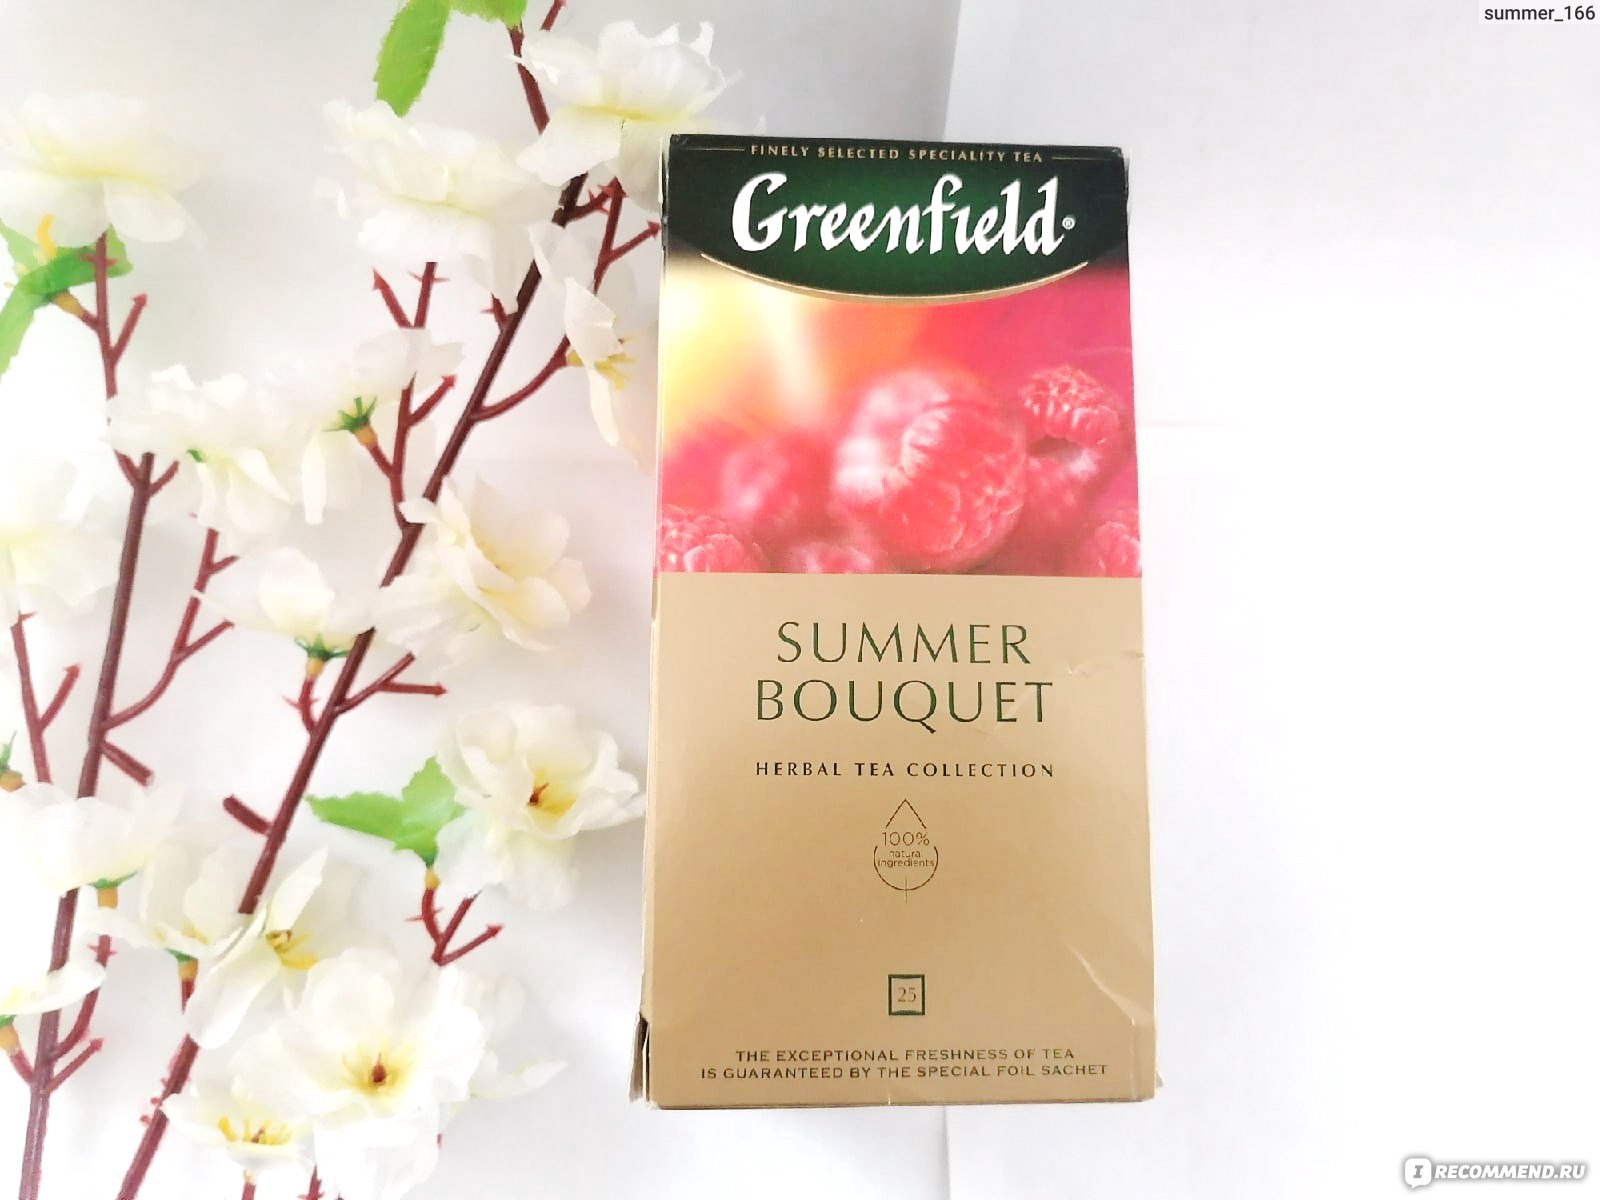 Greenfield Summer Bouquet состав